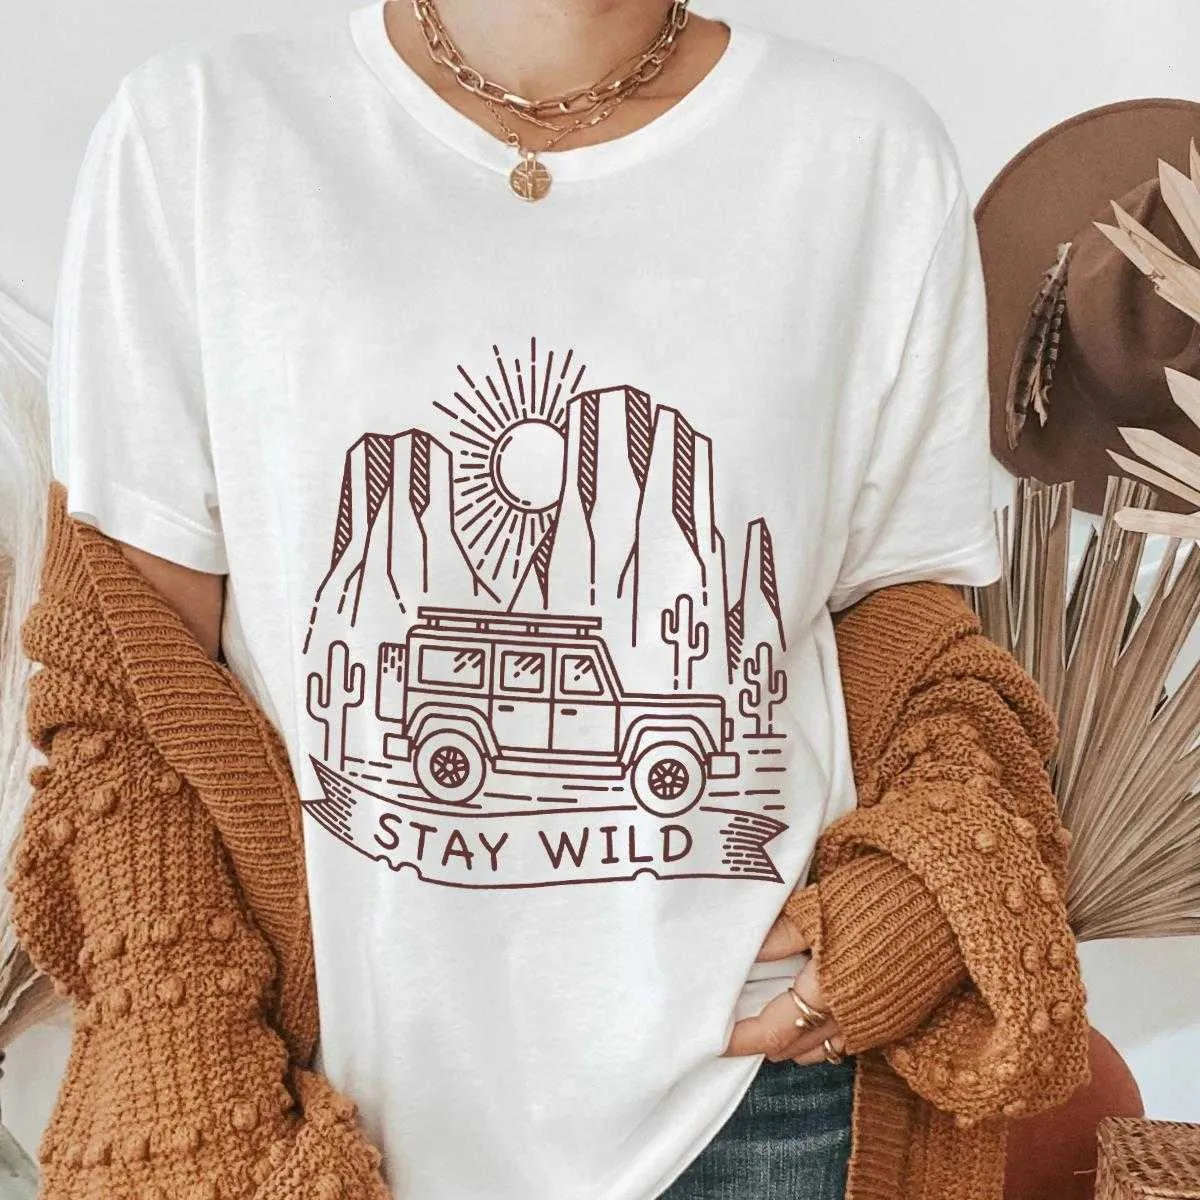 Stay Wild Tops T-shirt Camping Graphic Shirt Cactus Desert Scene Tee Women